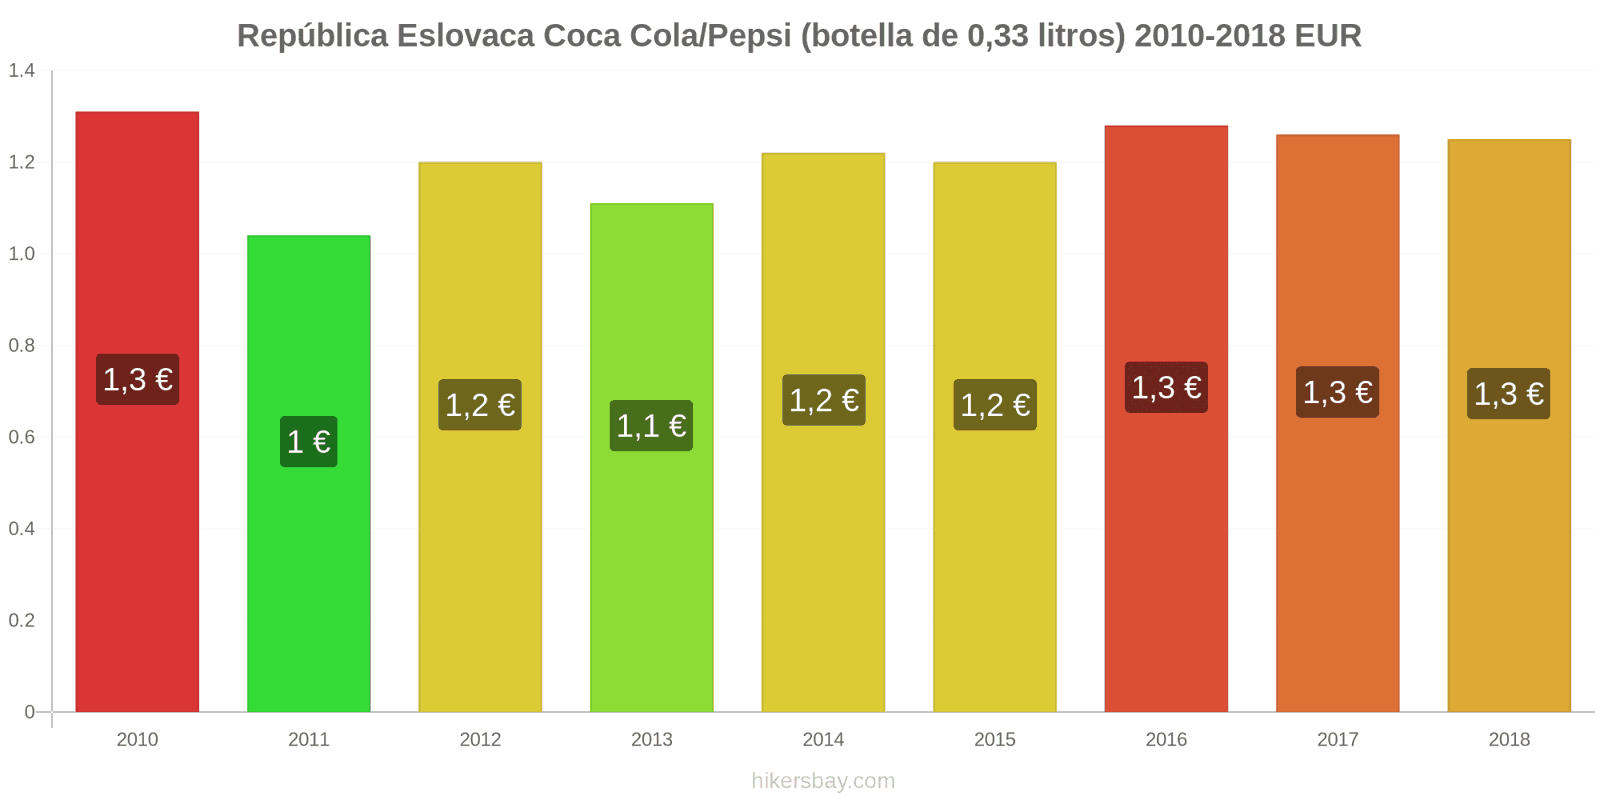 República Eslovaca cambios de precios Coca-Cola/Pepsi (botella de 0.33 litros) hikersbay.com